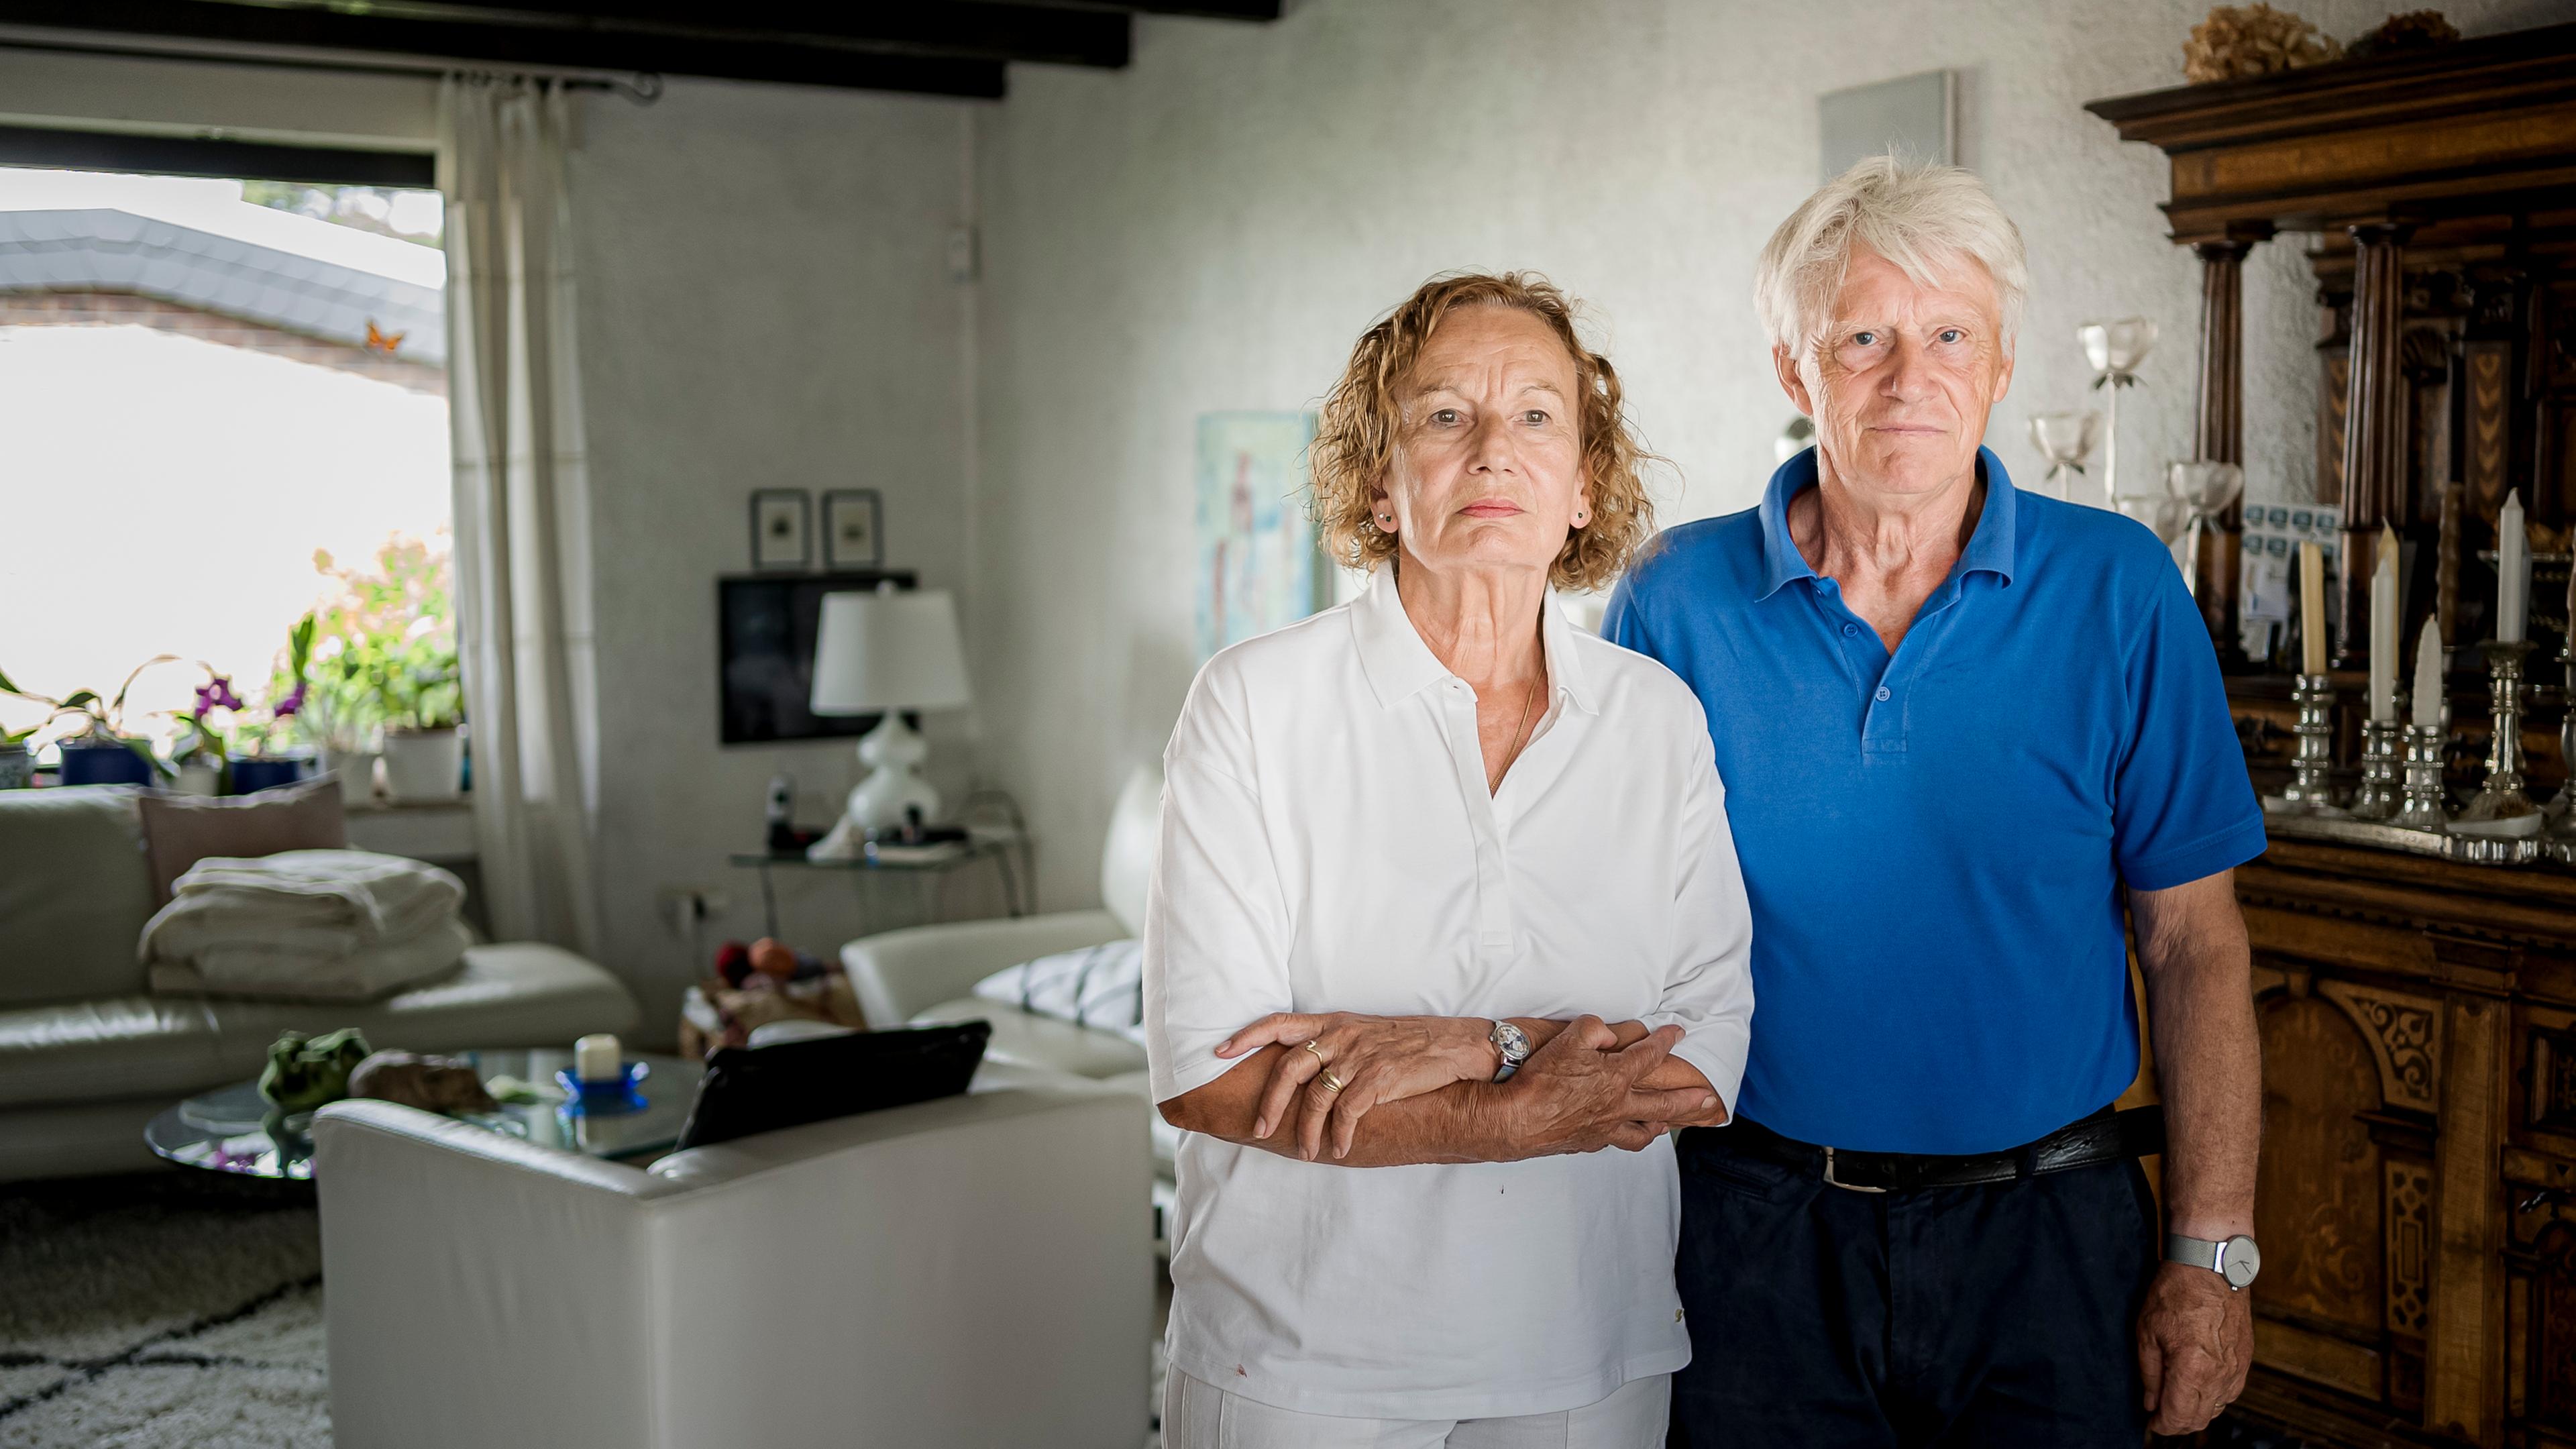 Sylvia und Armin Joos stehen im Wohnzimmer vor eine weißer Wand. Sylvia hat gelocktes kinnlanges Haar und trägt eine weiße Bluse, Armin hat graue Haare und trägt ein blaues Polo-Shirt.